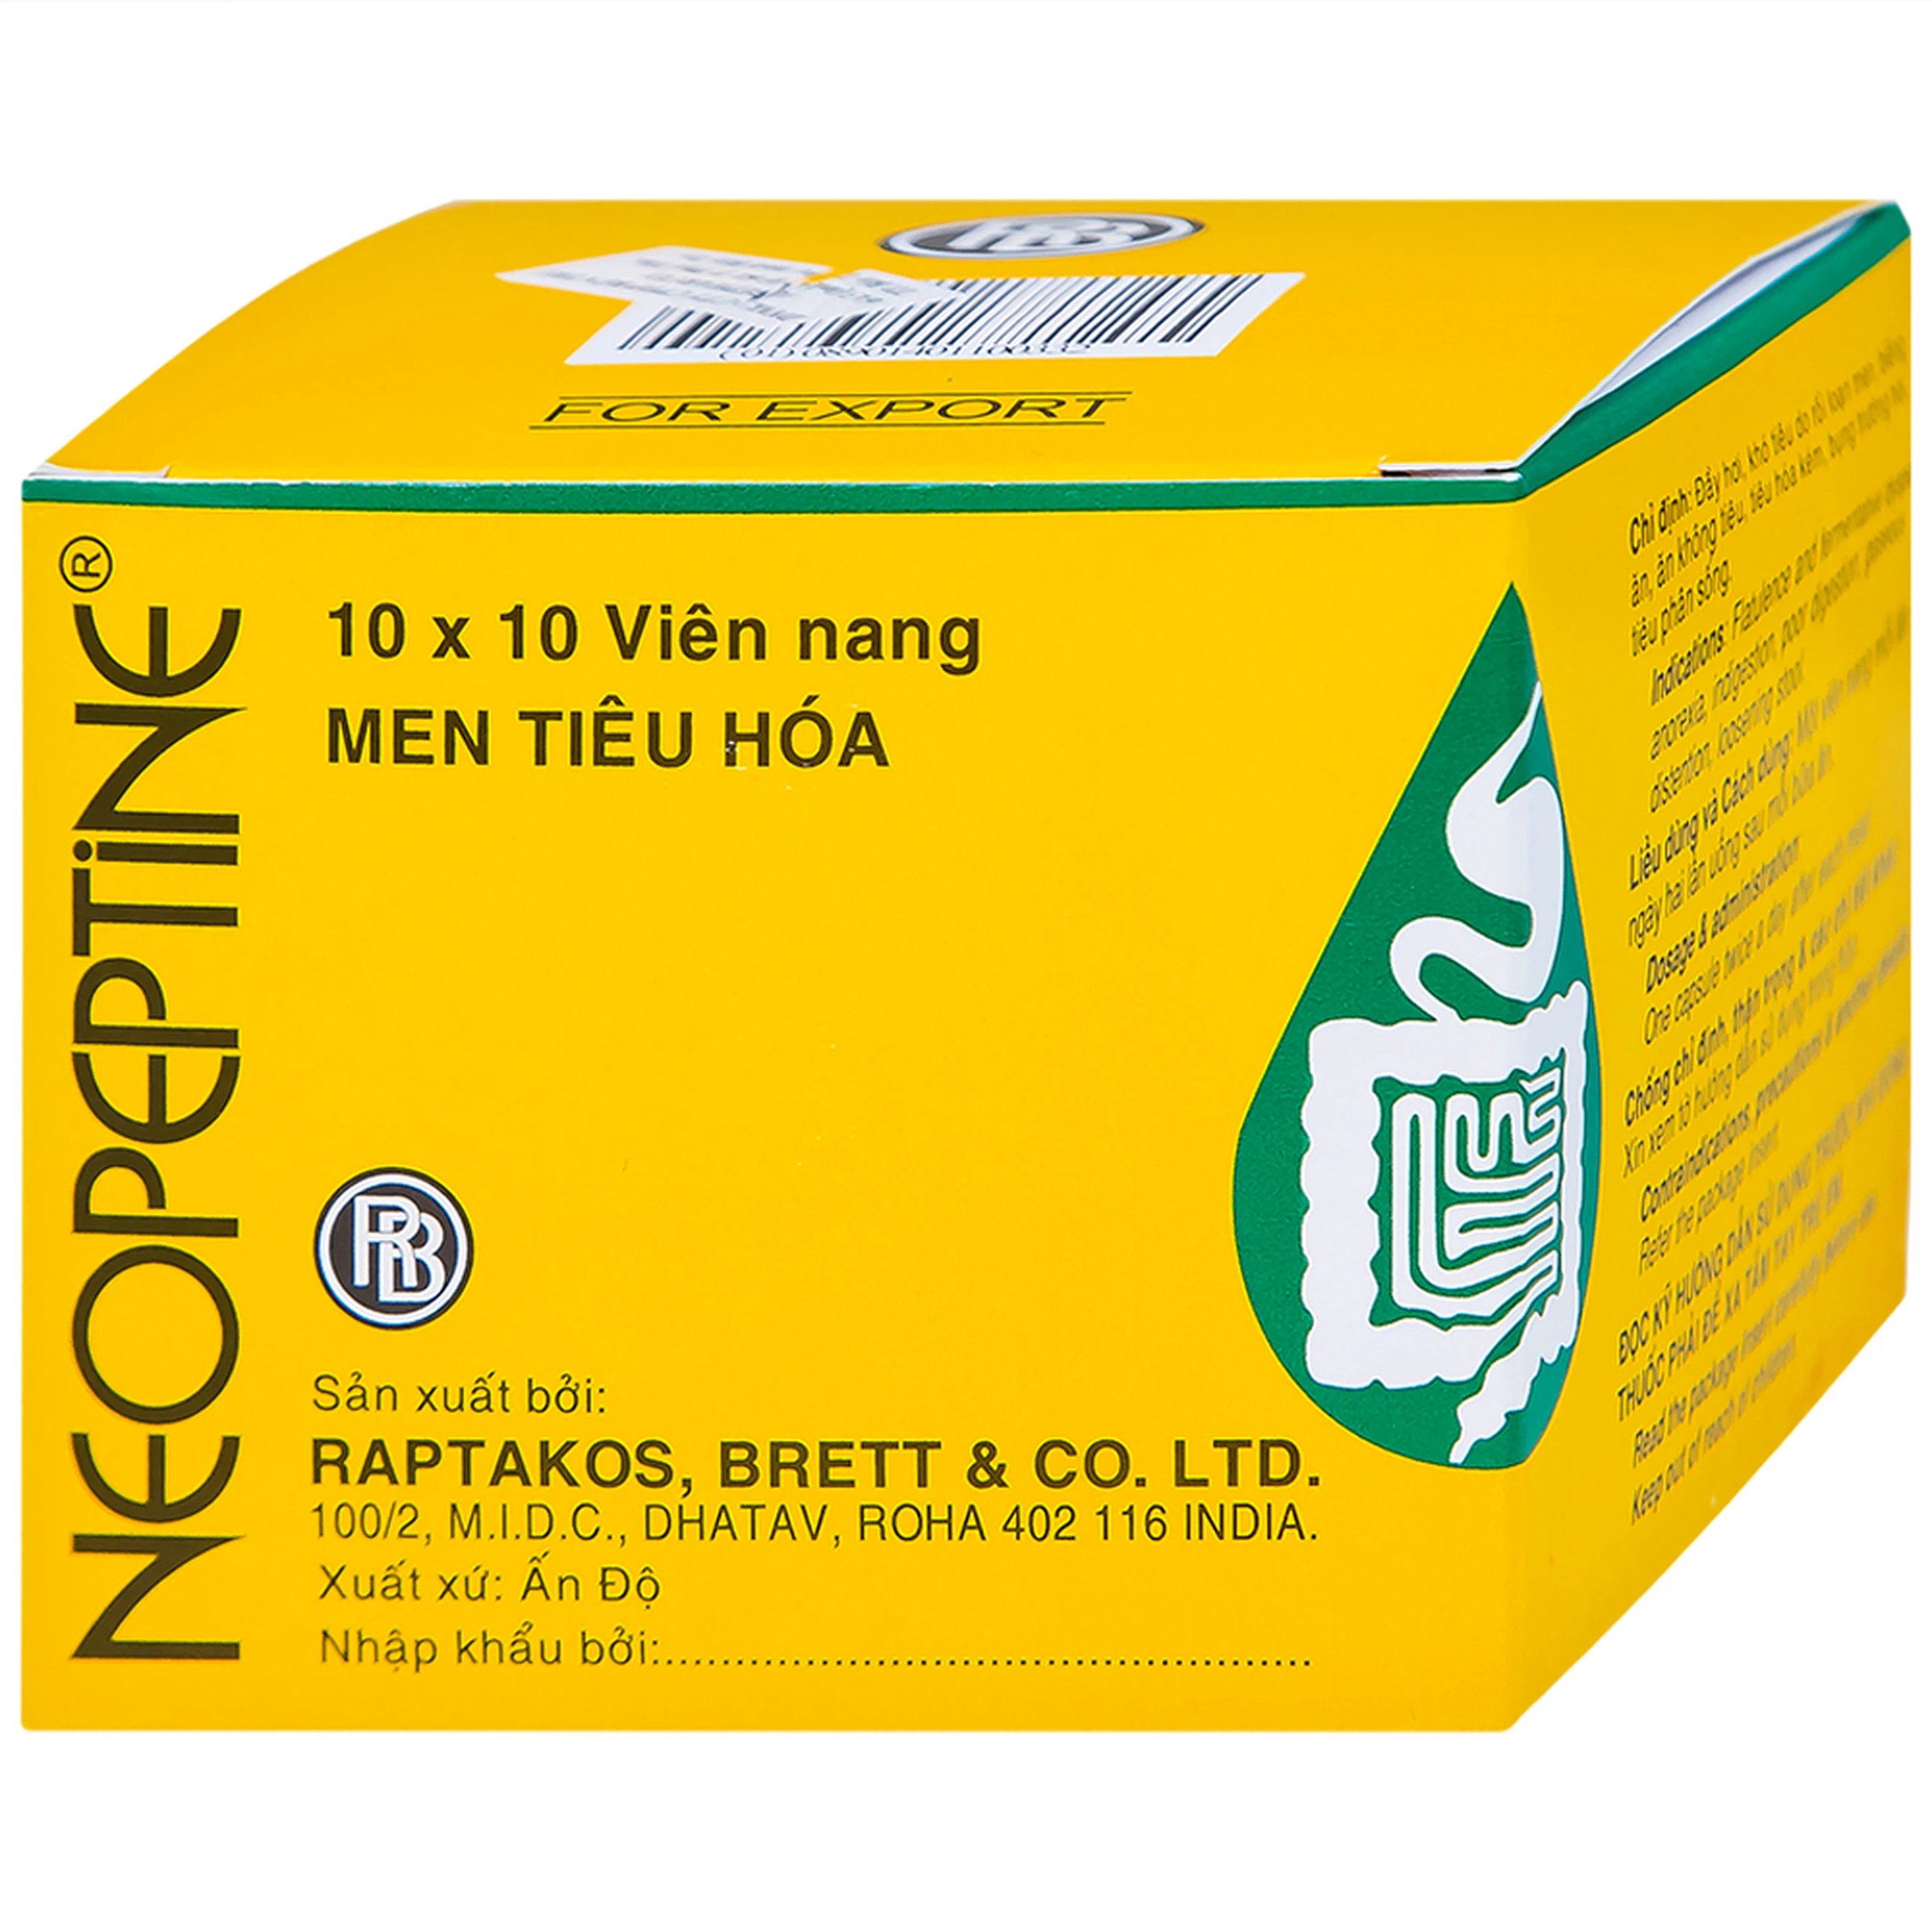 Men tiêu hóa Neopeptine Raptakos hỗ trợ điều trị đầy hơi, khó tiêu, biếng ăn (10 vỉ x 10 viên) 